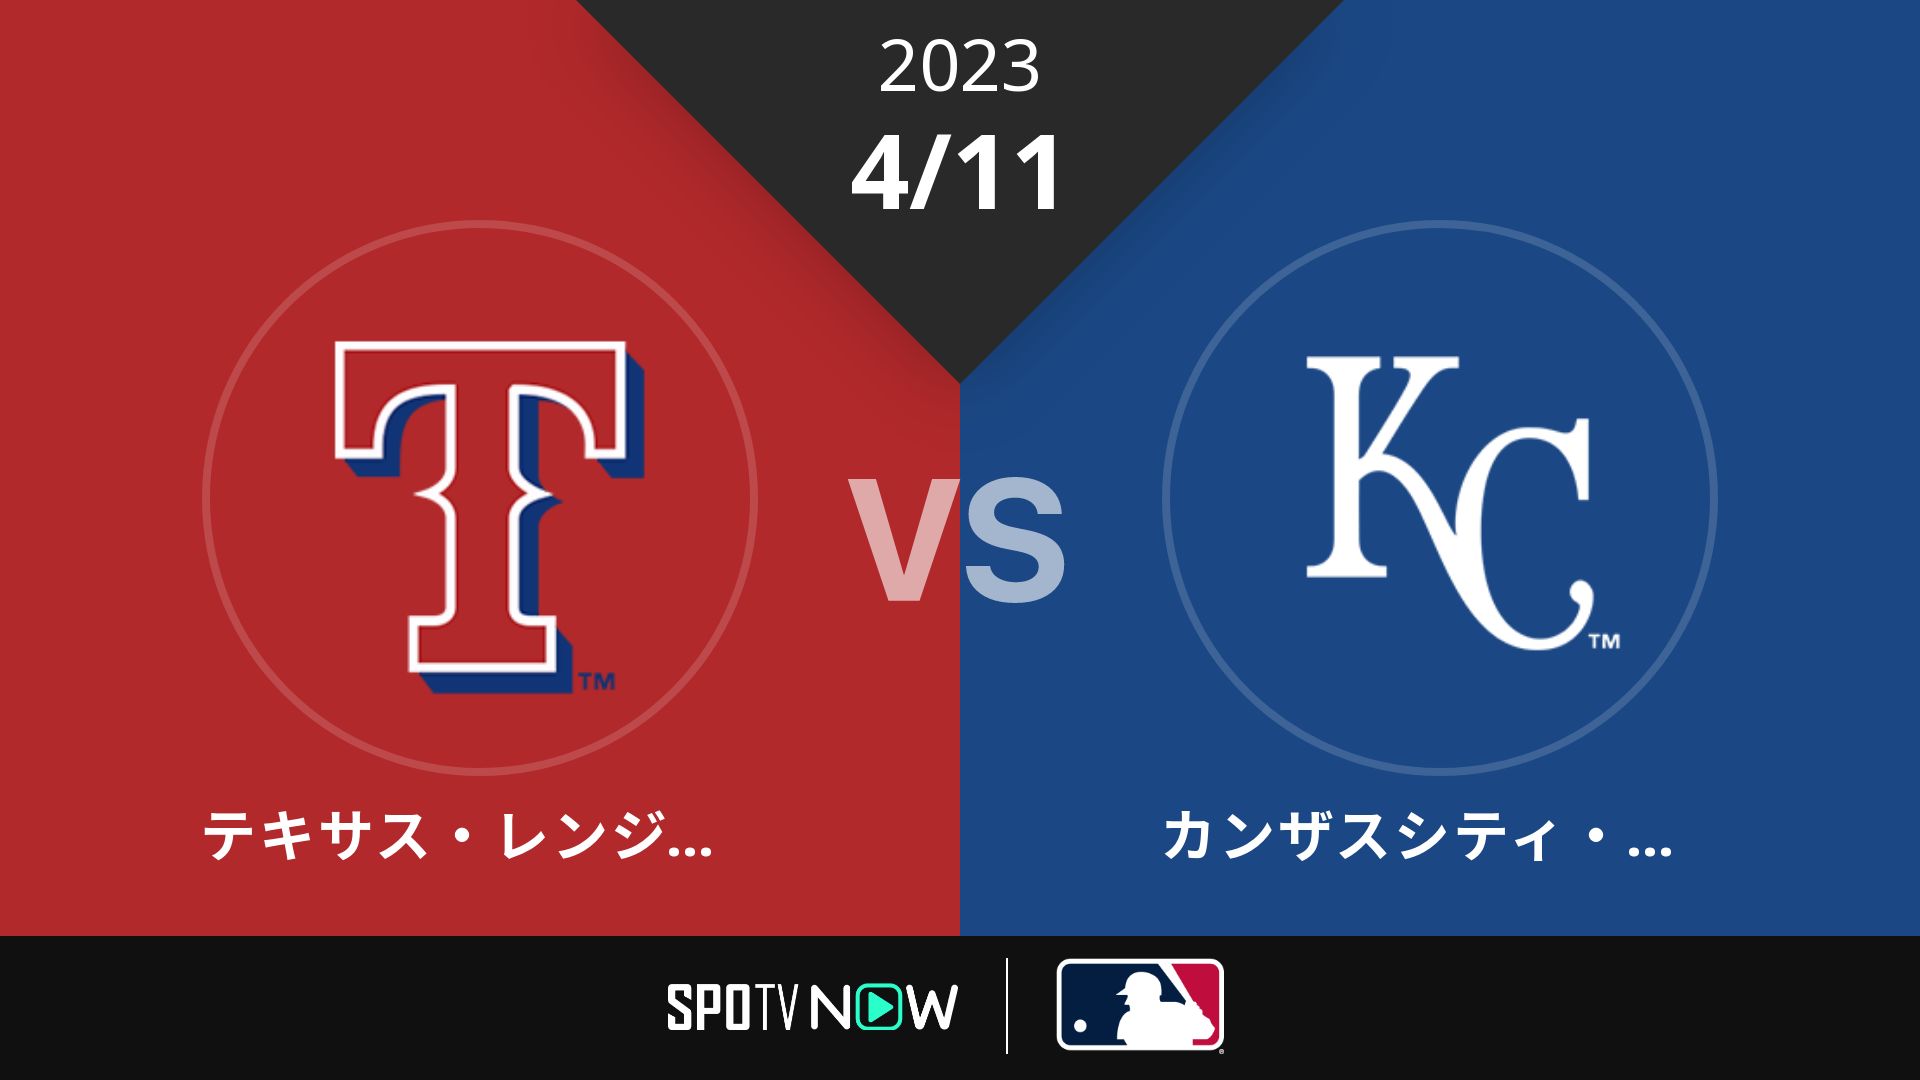 2023/4/11 レンジャーズ vs ロイヤルズ [MLB]